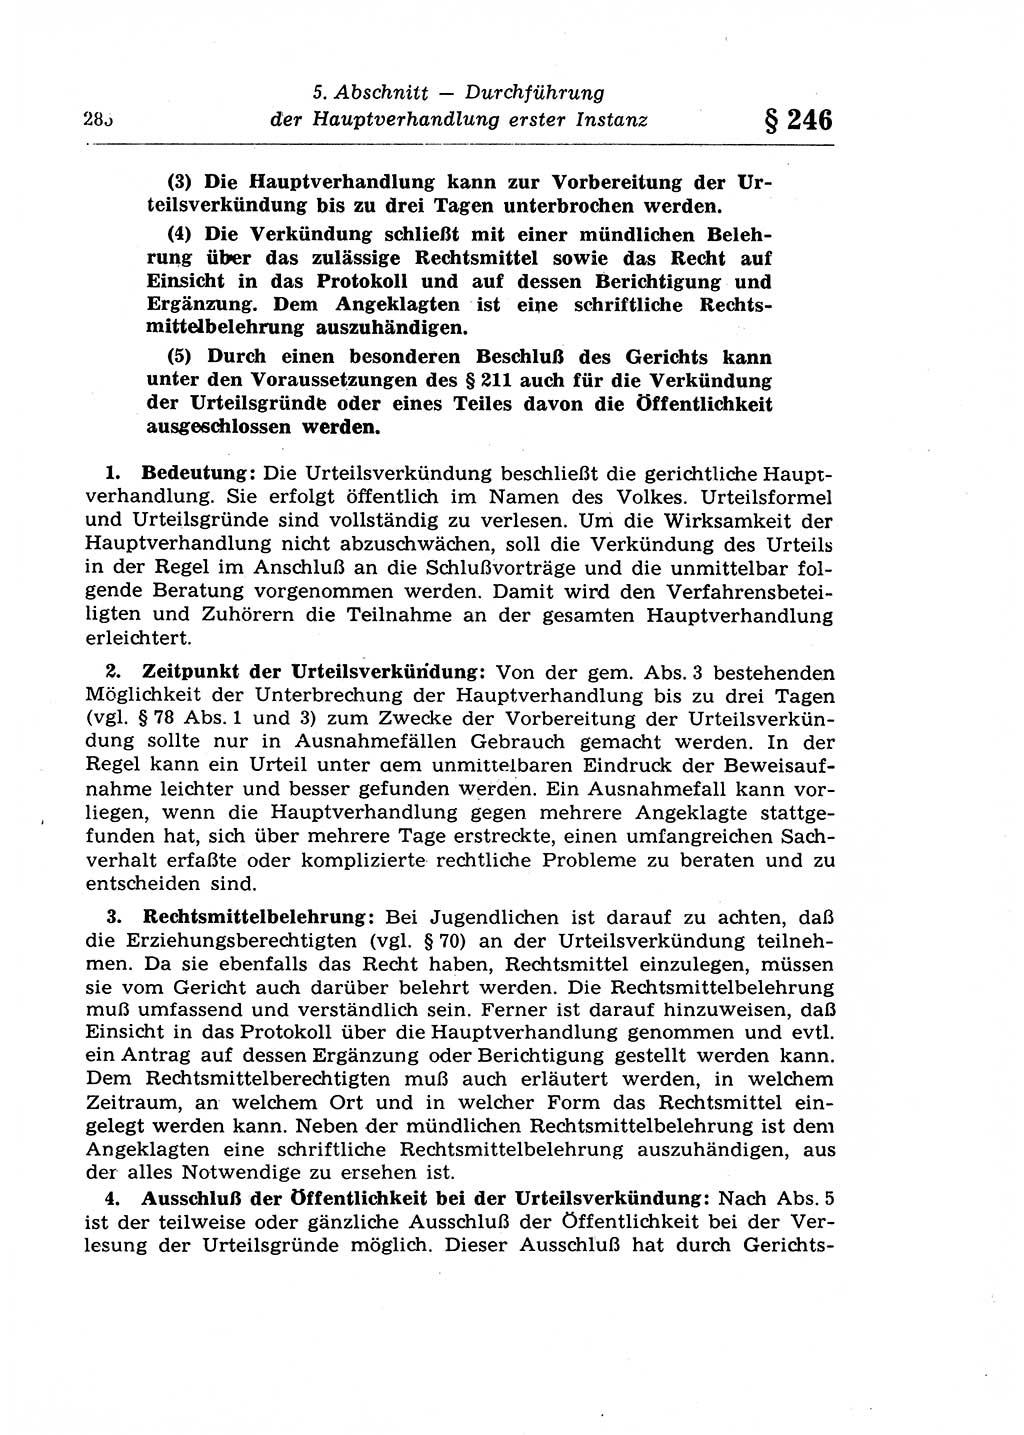 Strafprozeßrecht der DDR (Deutsche Demokratische Republik), Lehrkommentar zur Strafprozeßordnung (StPO) 1968, Seite 285 (Strafprozeßr. DDR Lehrkomm. StPO 19688, S. 285)